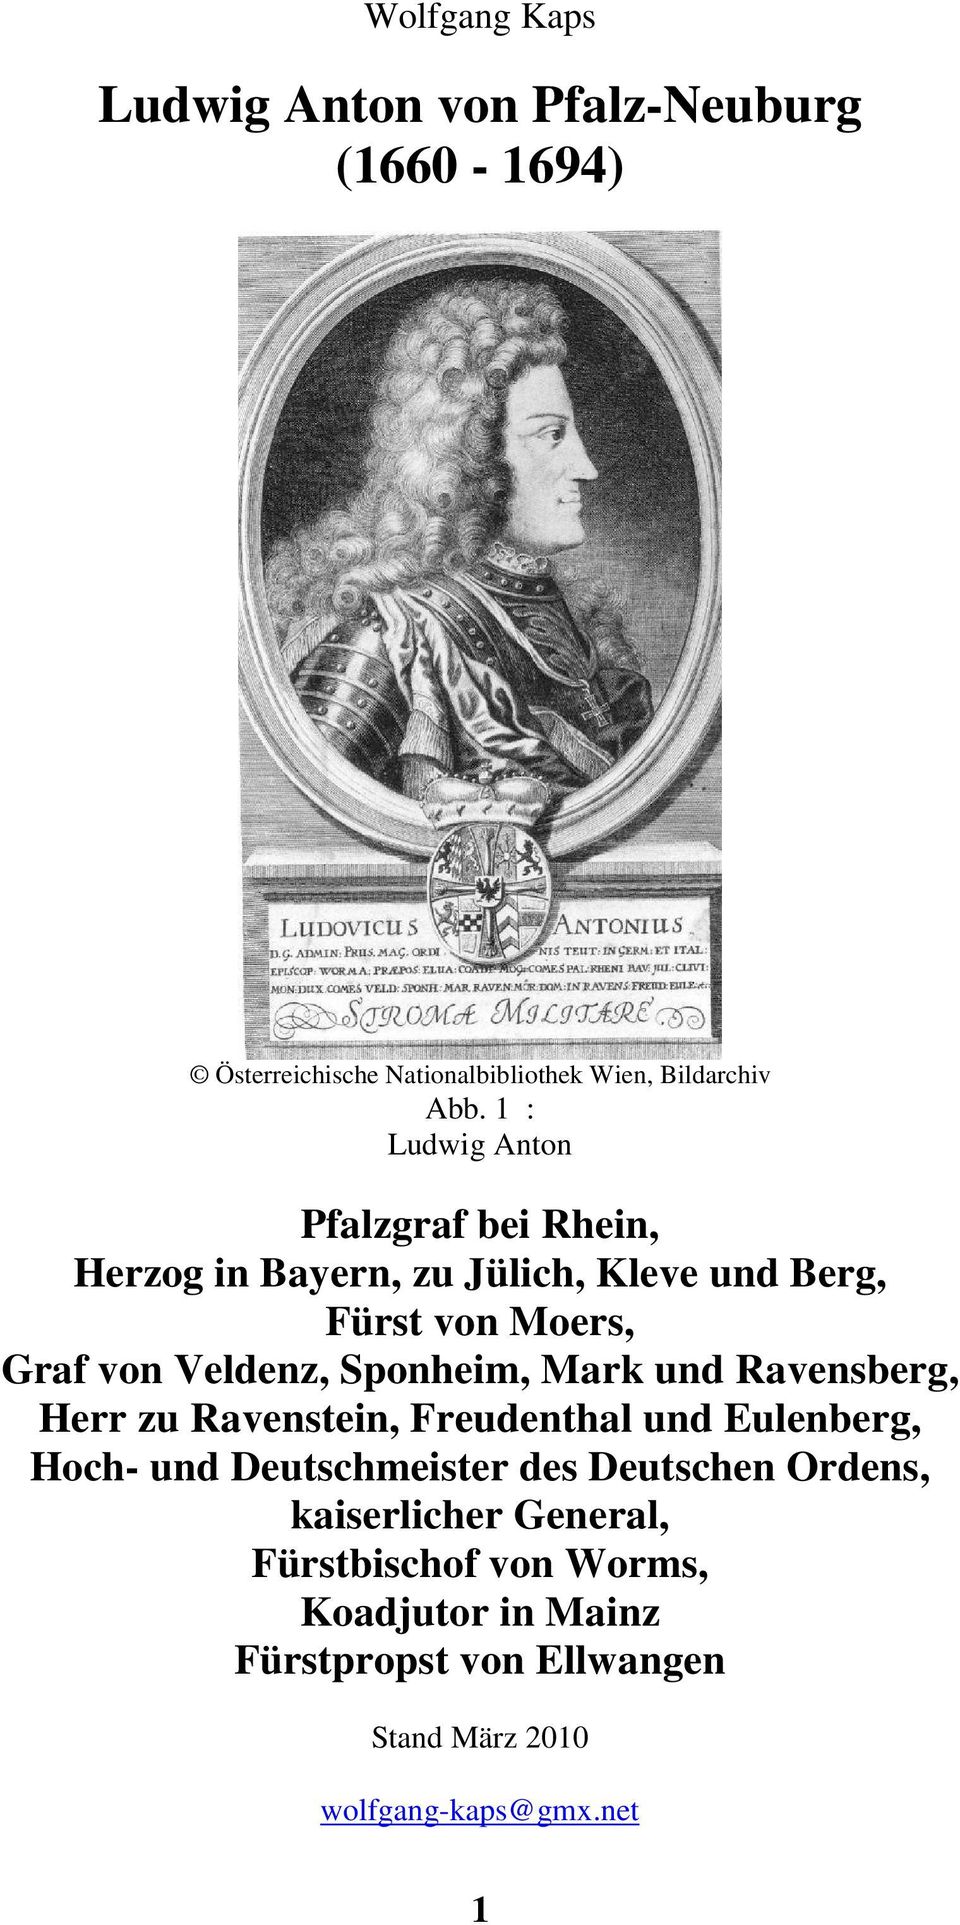 Sponheim, Mark und Ravensberg, Herr zu Ravenstein, Freudenthal und Eulenberg, Hoch- und Deutschmeister des Deutschen